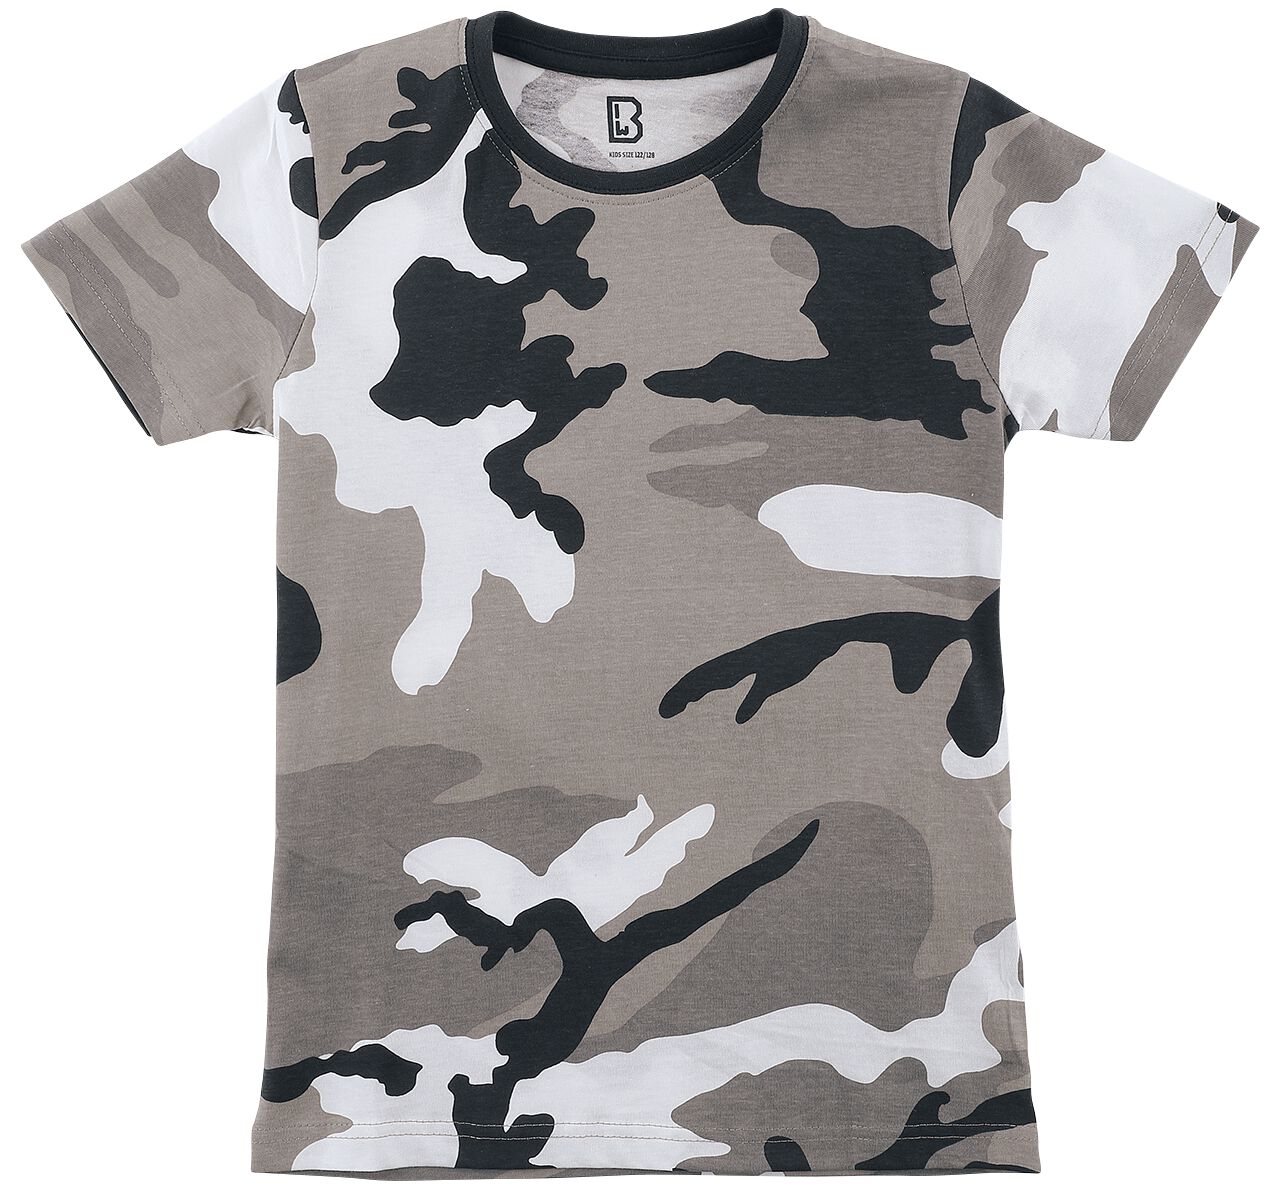 T-shirt de Brandit - T-Shirt Enfant - 122/128 - pour garçons - camouflage urbain